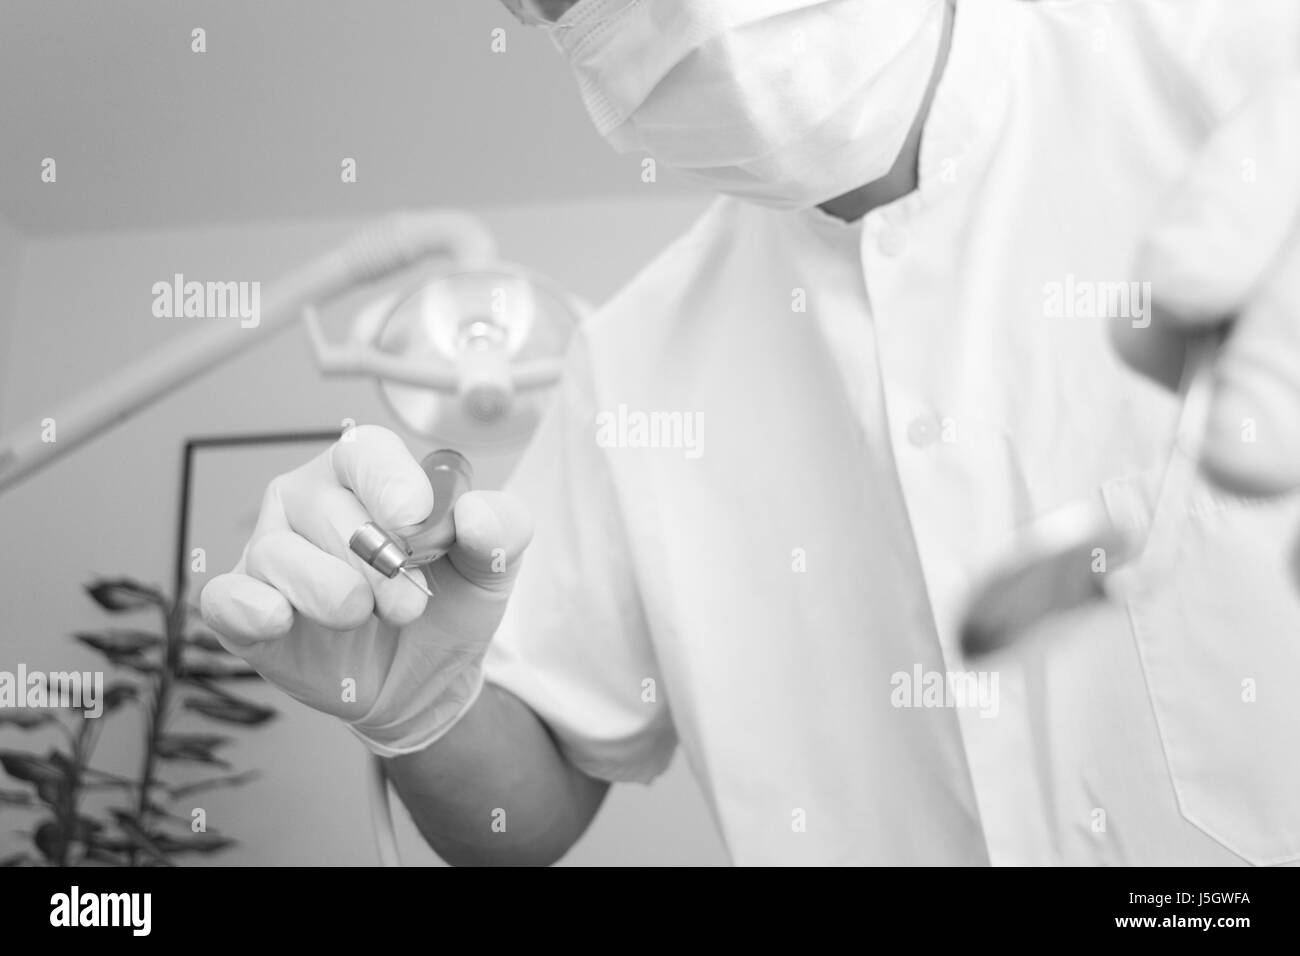 Medico medico medico medico dentista practicioner bw paura ache sterili Foto Stock